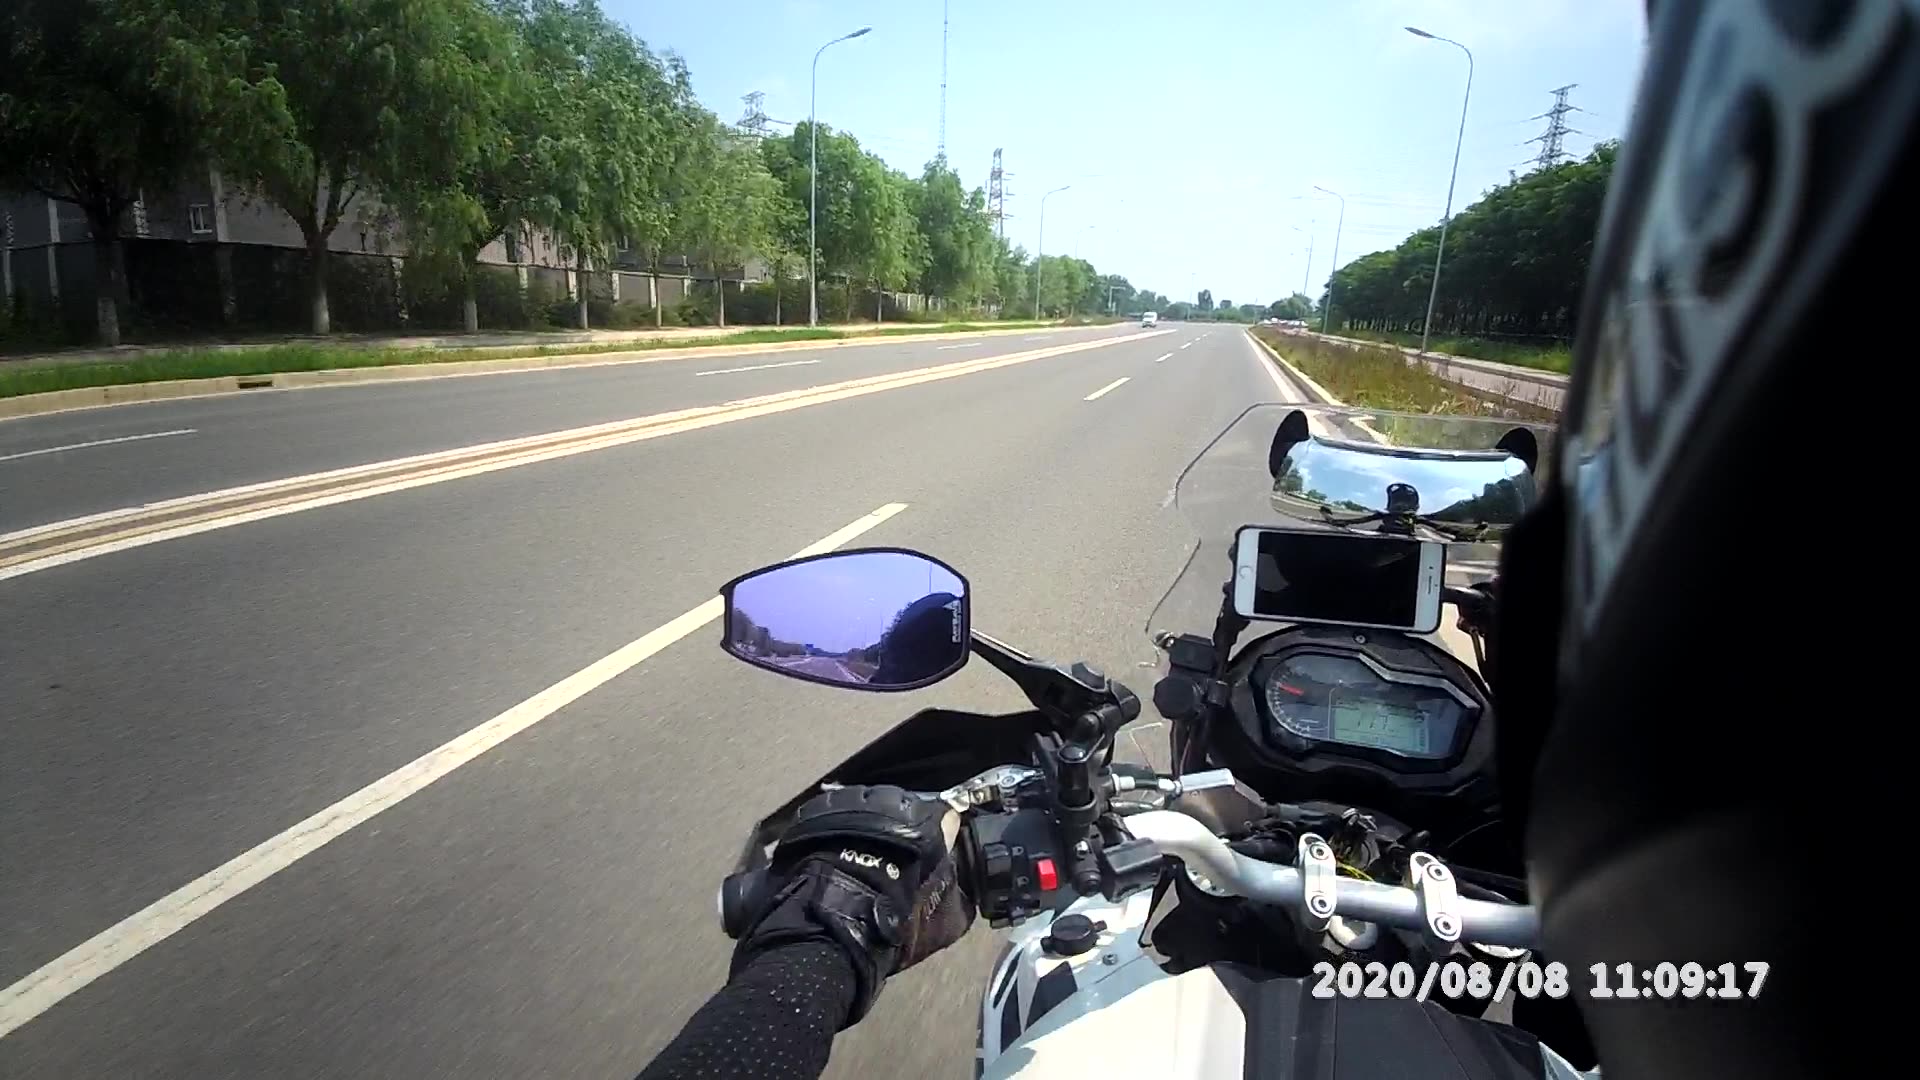 TANAX Motorcycle Gương chiếu hậu Chống cột Chống Sửa đổi Chống chói mắt Vision Big Angle Angle Millet Calf Aosaex Gương xe